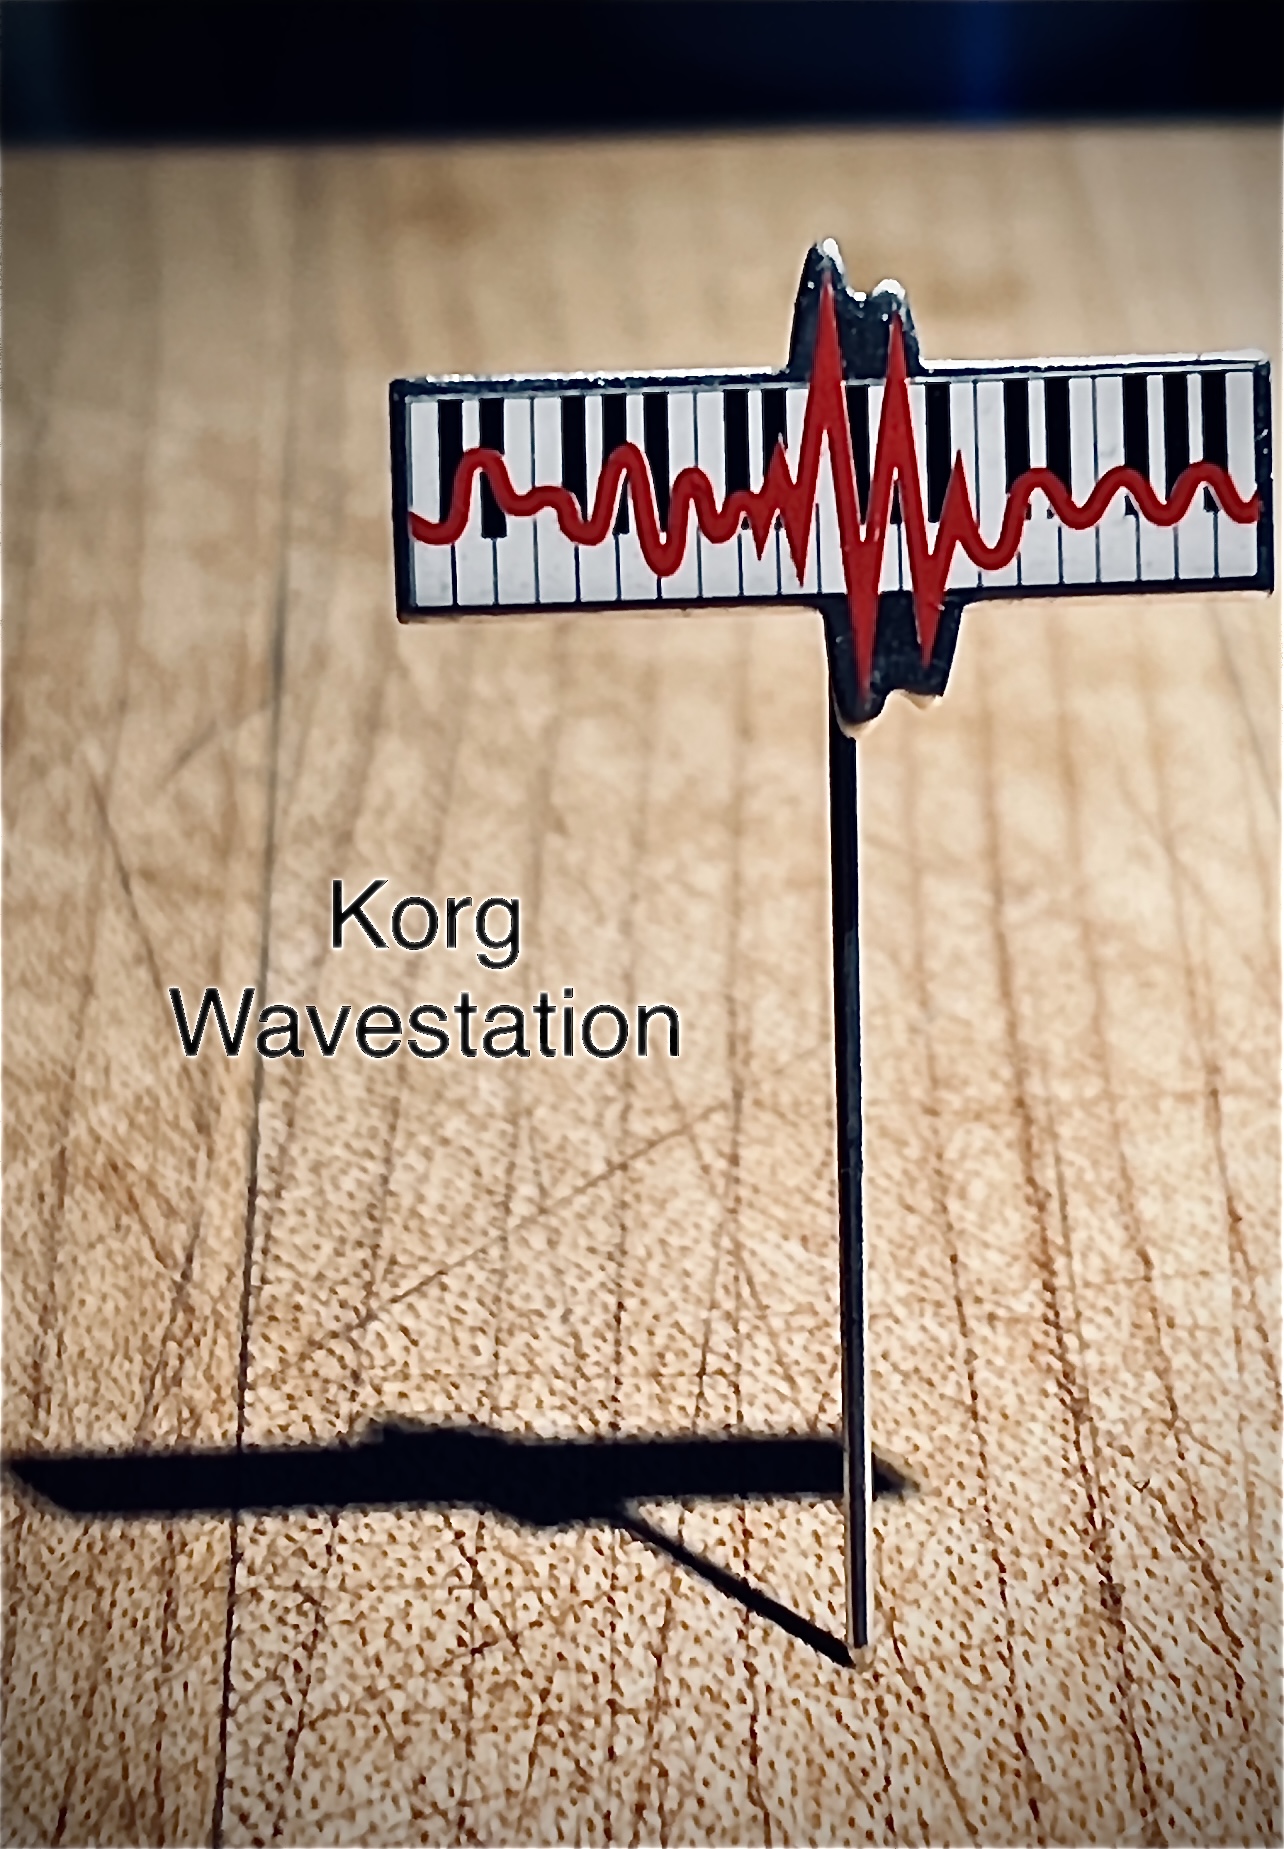 1985 Promotional Pin for Korg's WaveStation